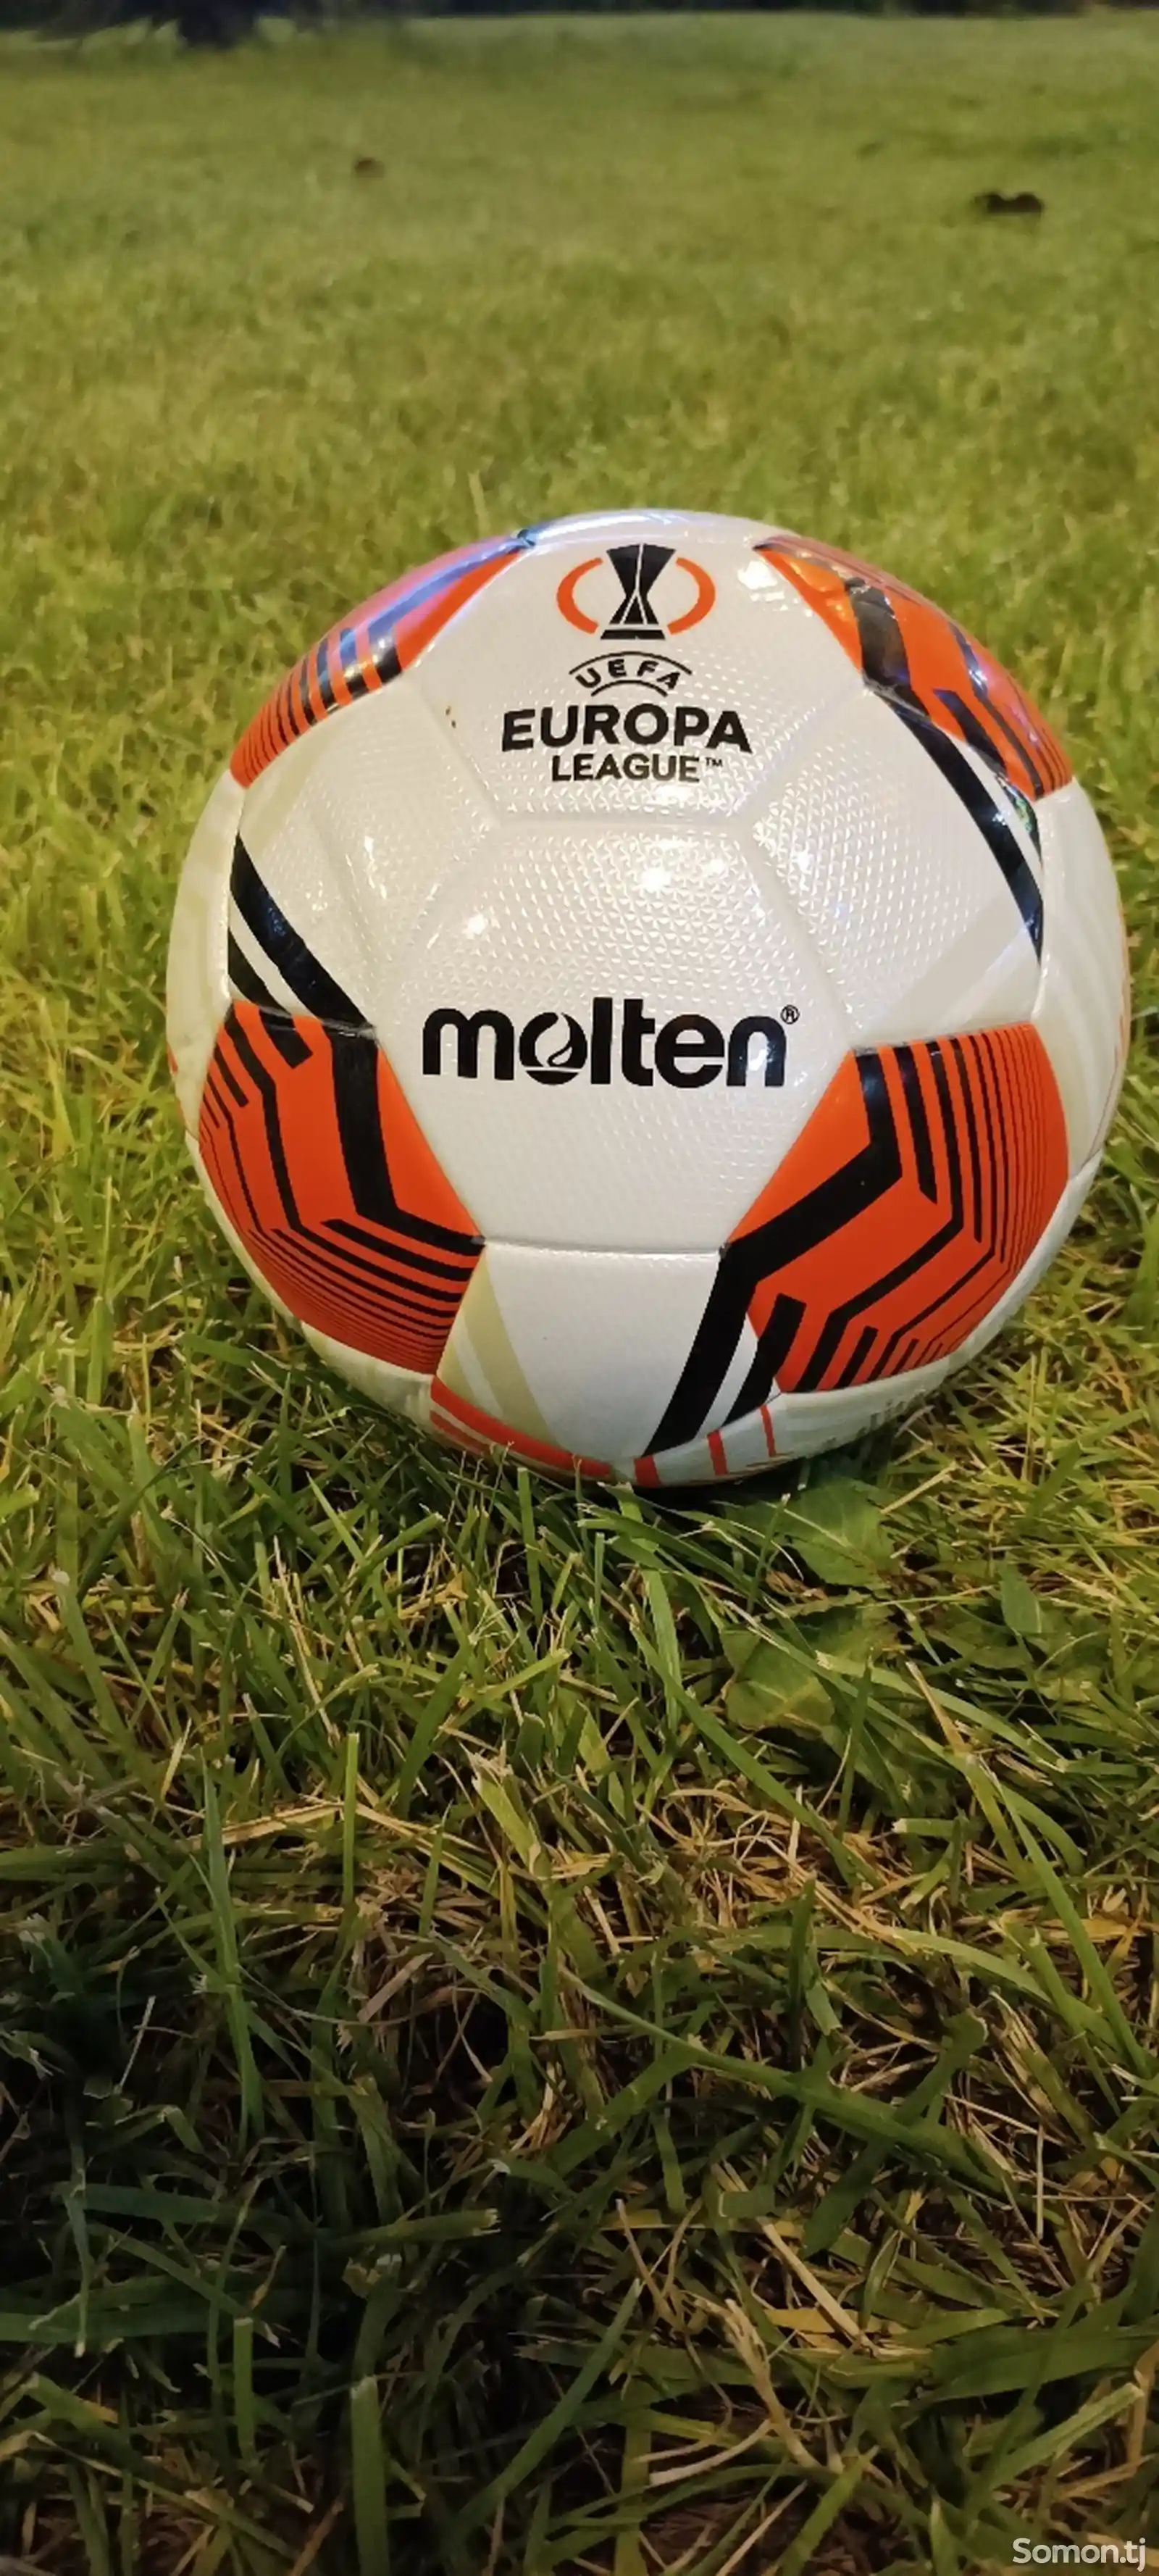 Мяч футбольный UEFA EUROPA LEAGUE molten-1